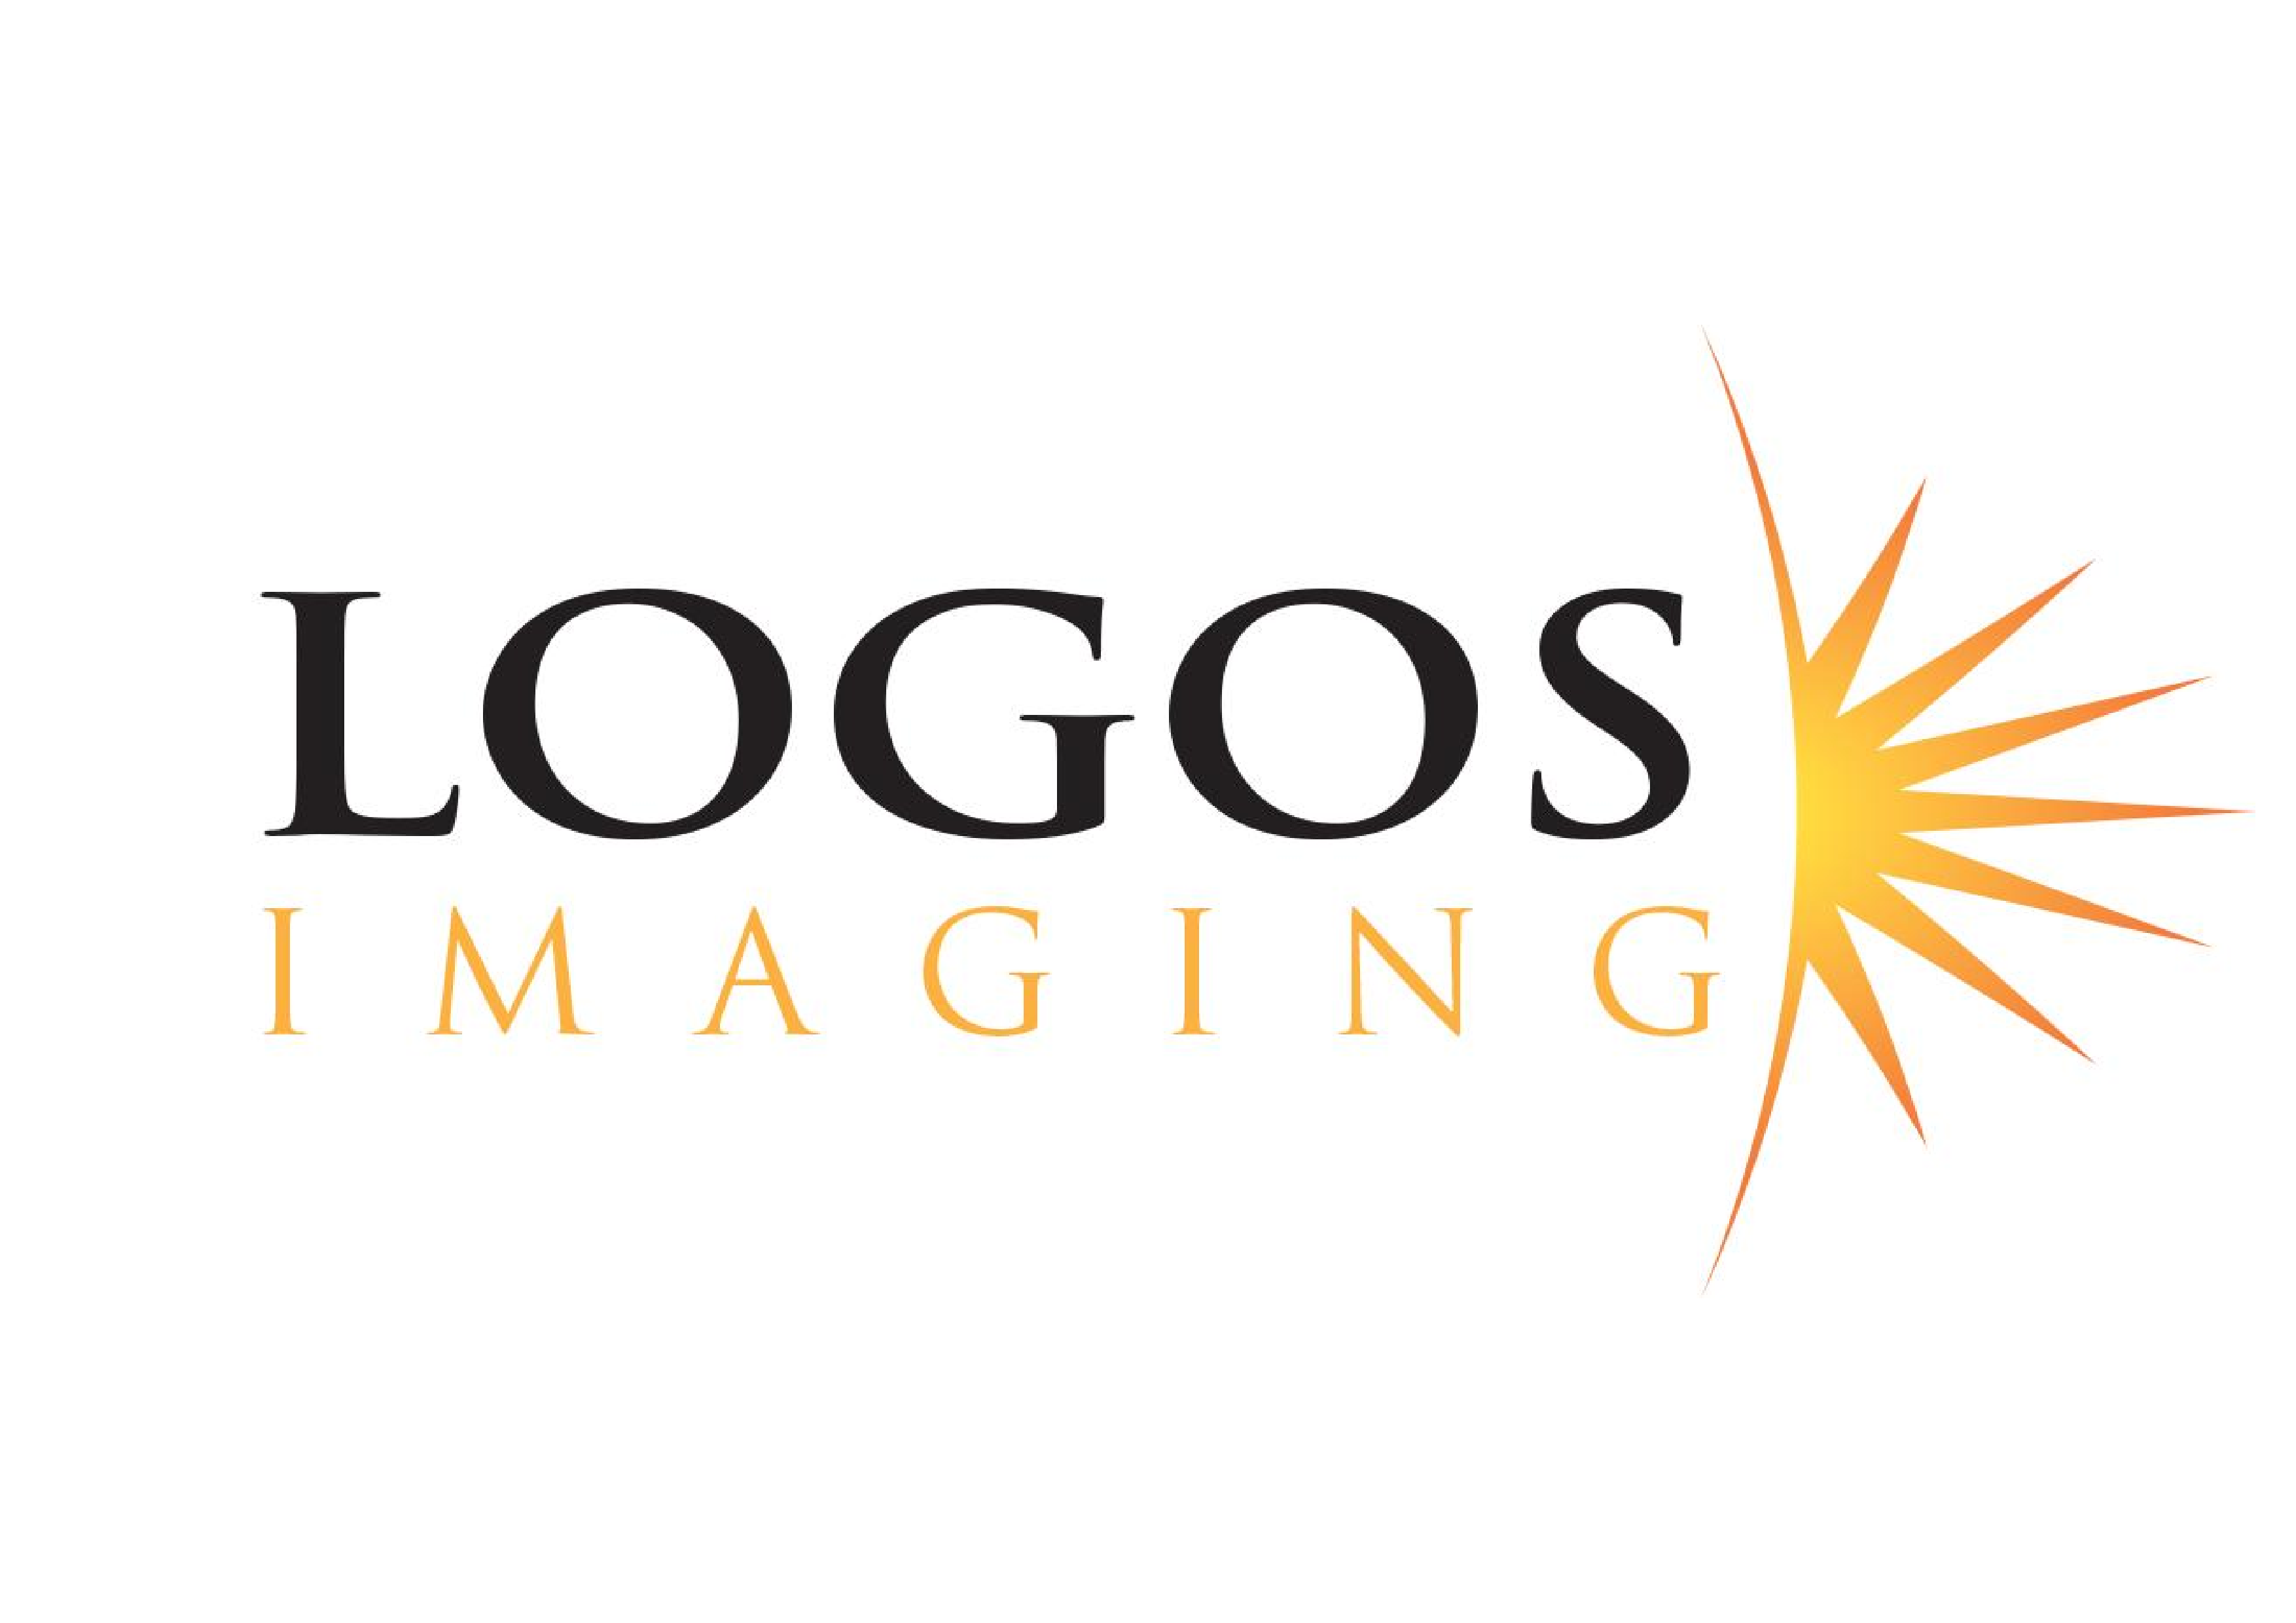 Logos Imaging